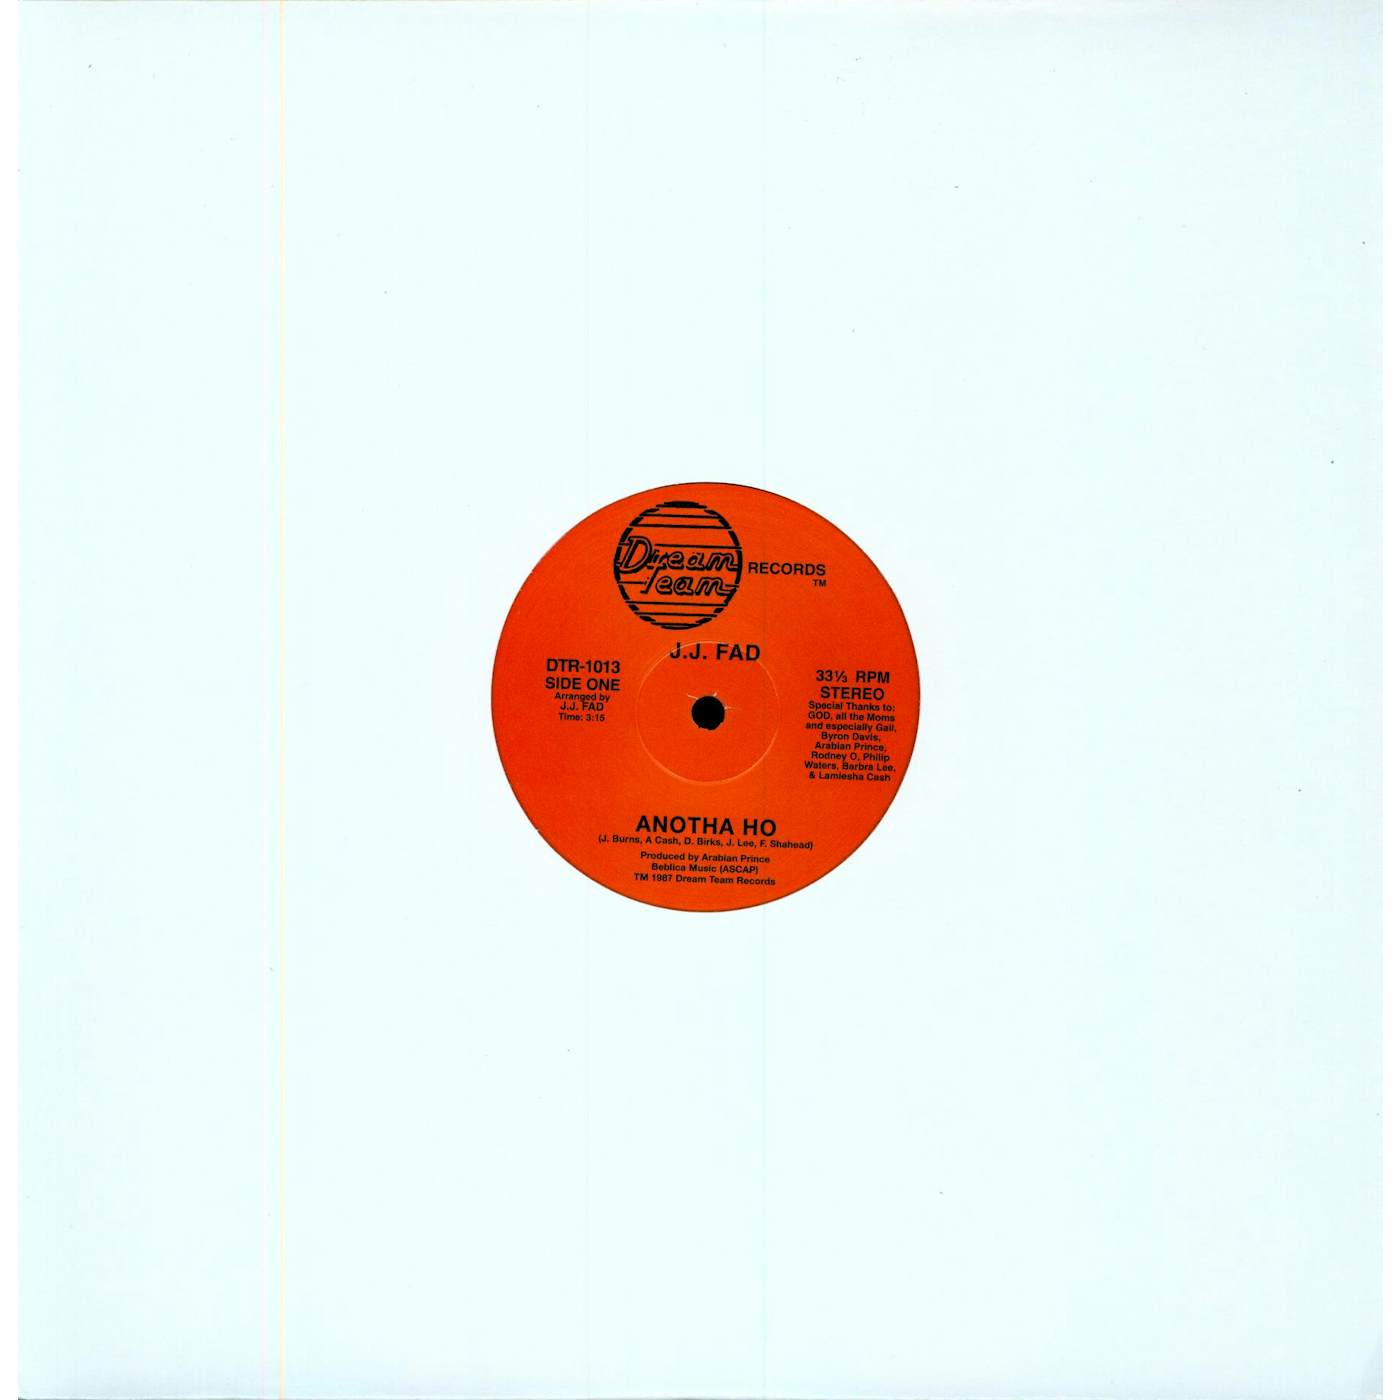 J.J. Fad Supersonic Vinyl Record